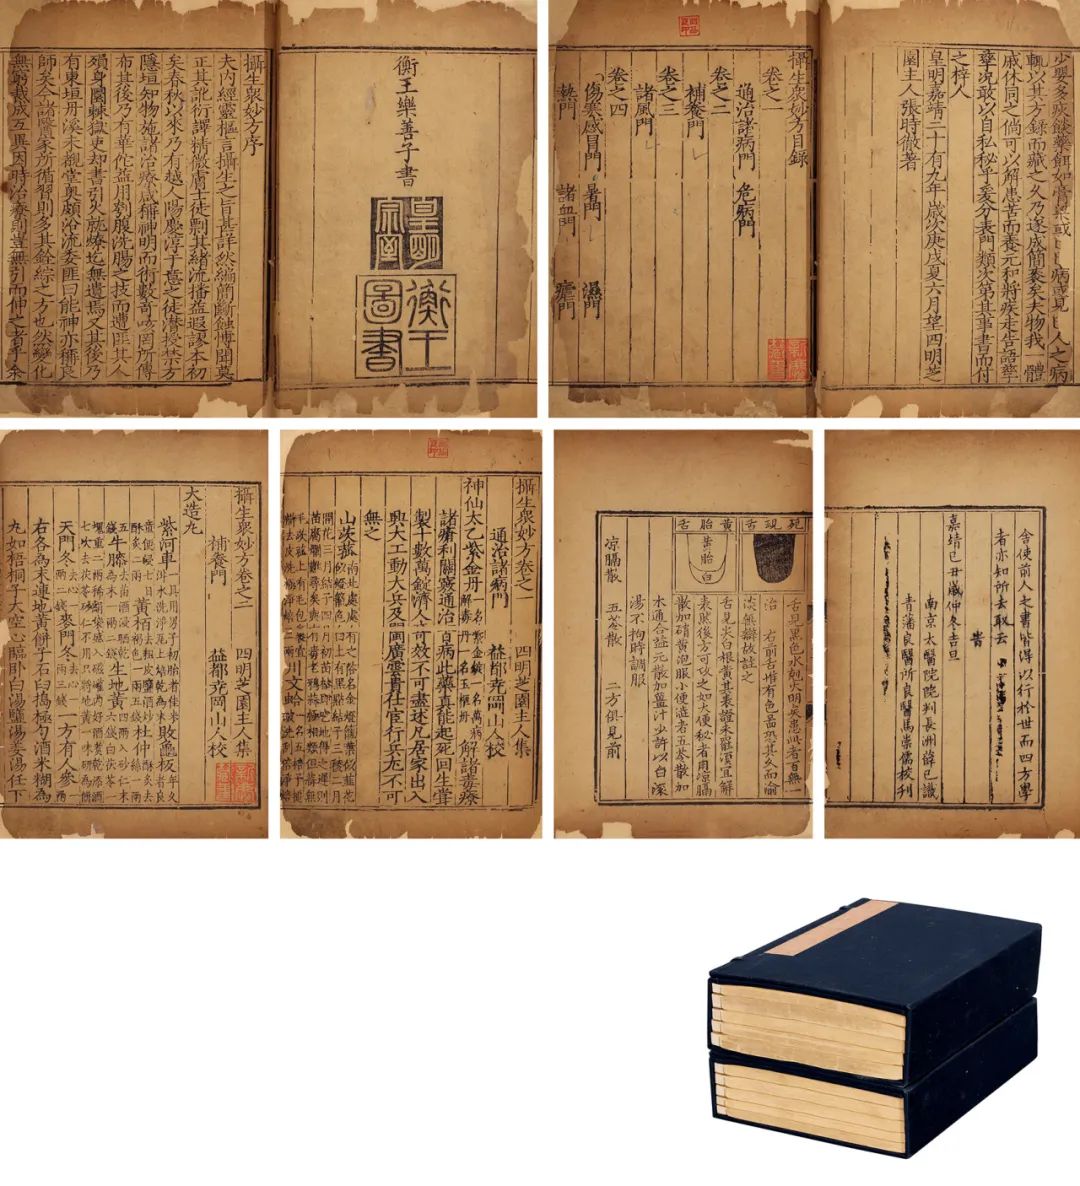 著录:《中国古籍善本总目》p844提要:此书内有于鬯等前贤朱墨两色批校